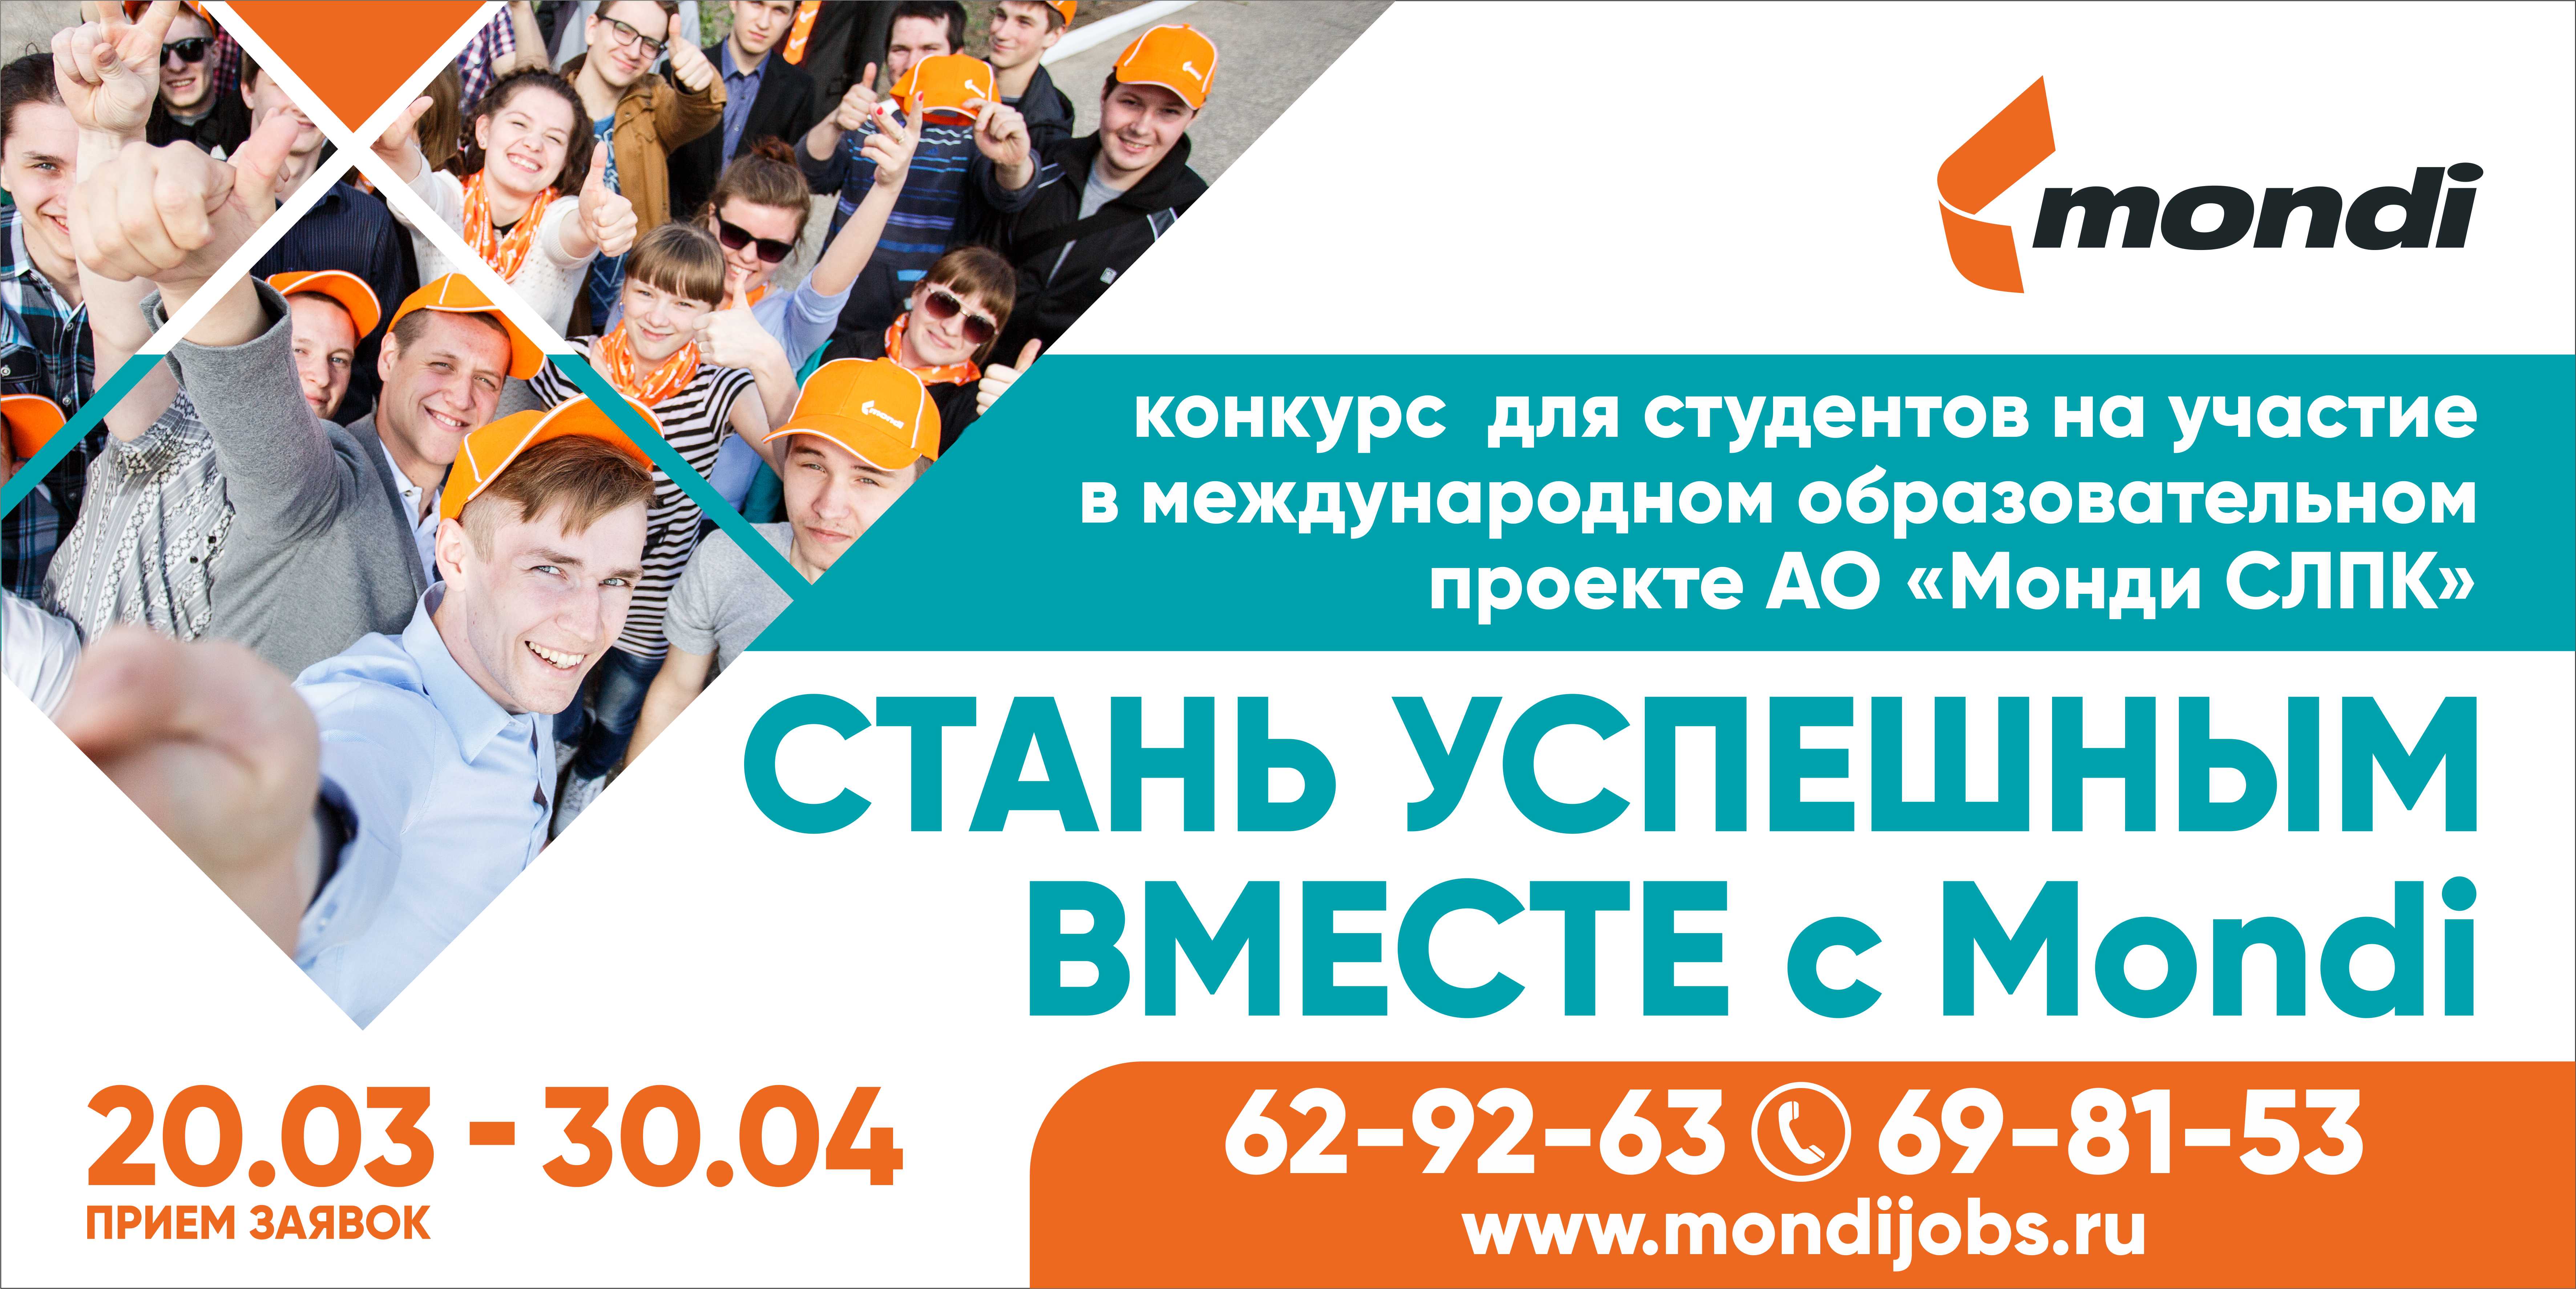 Монди СЛПК проводит конкурс на участие в образовательном проекте «Стань успешным вместе с Mondi!»